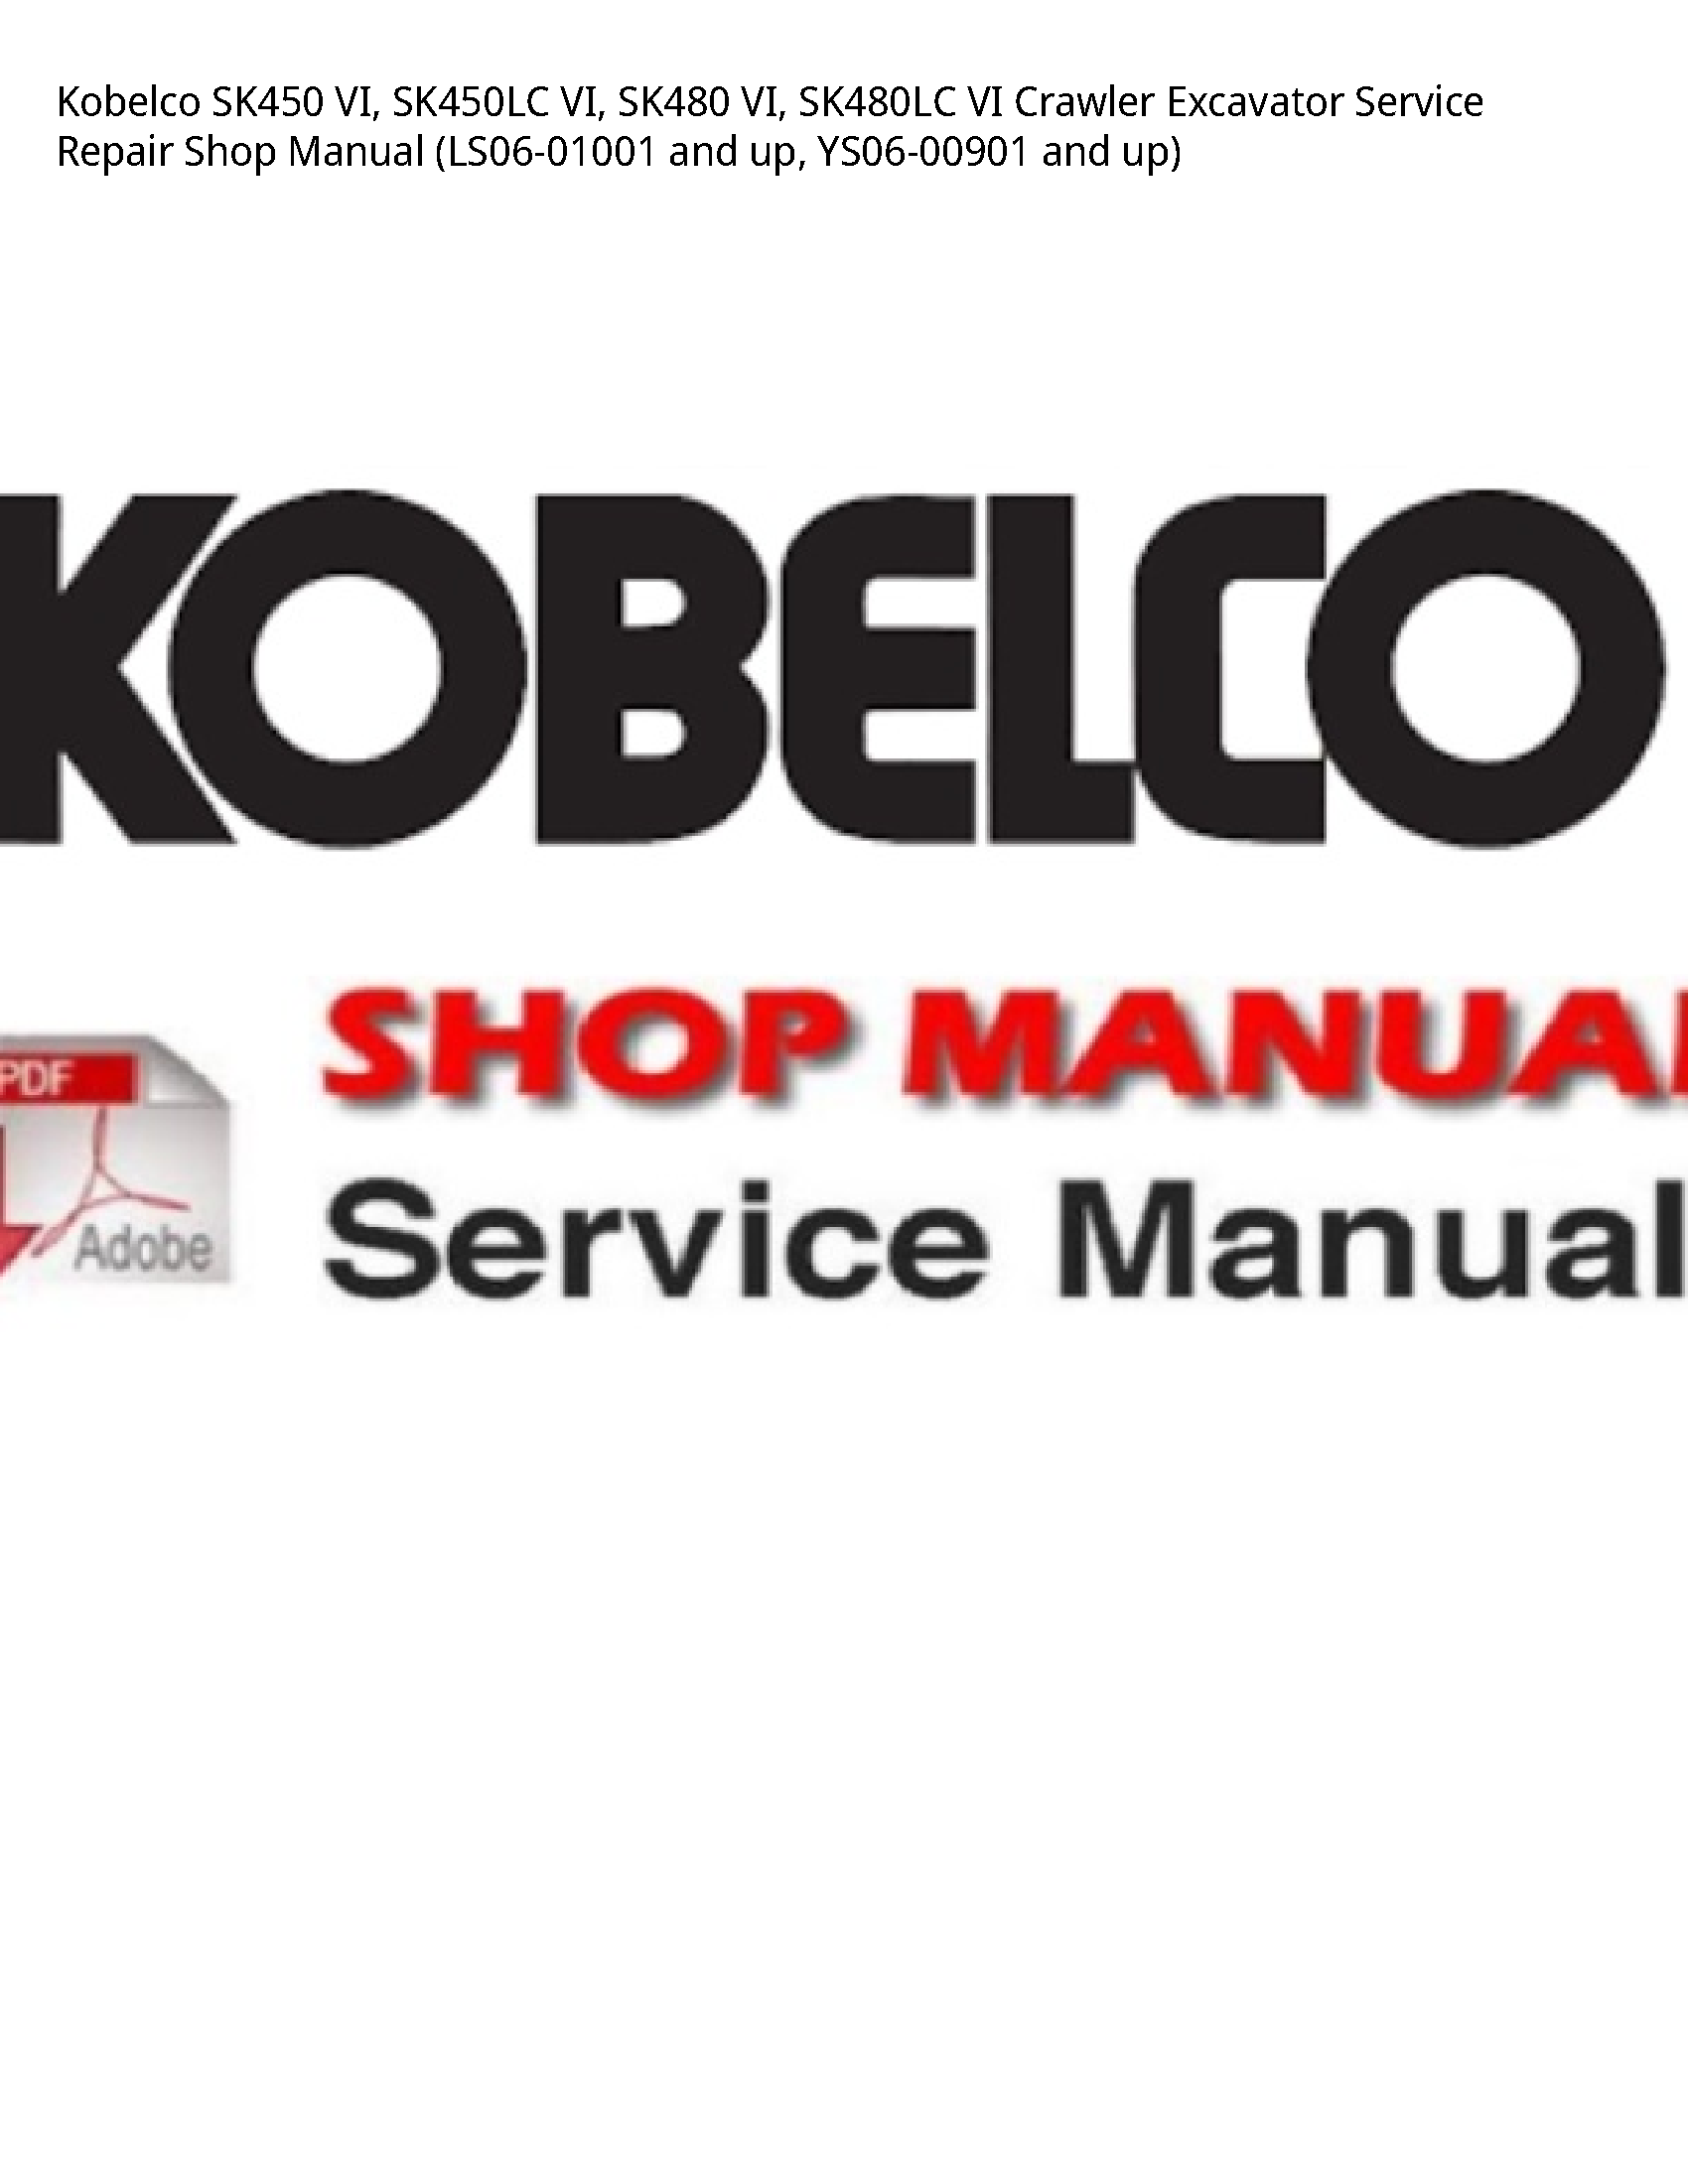 Kobelco SK450 VI manual